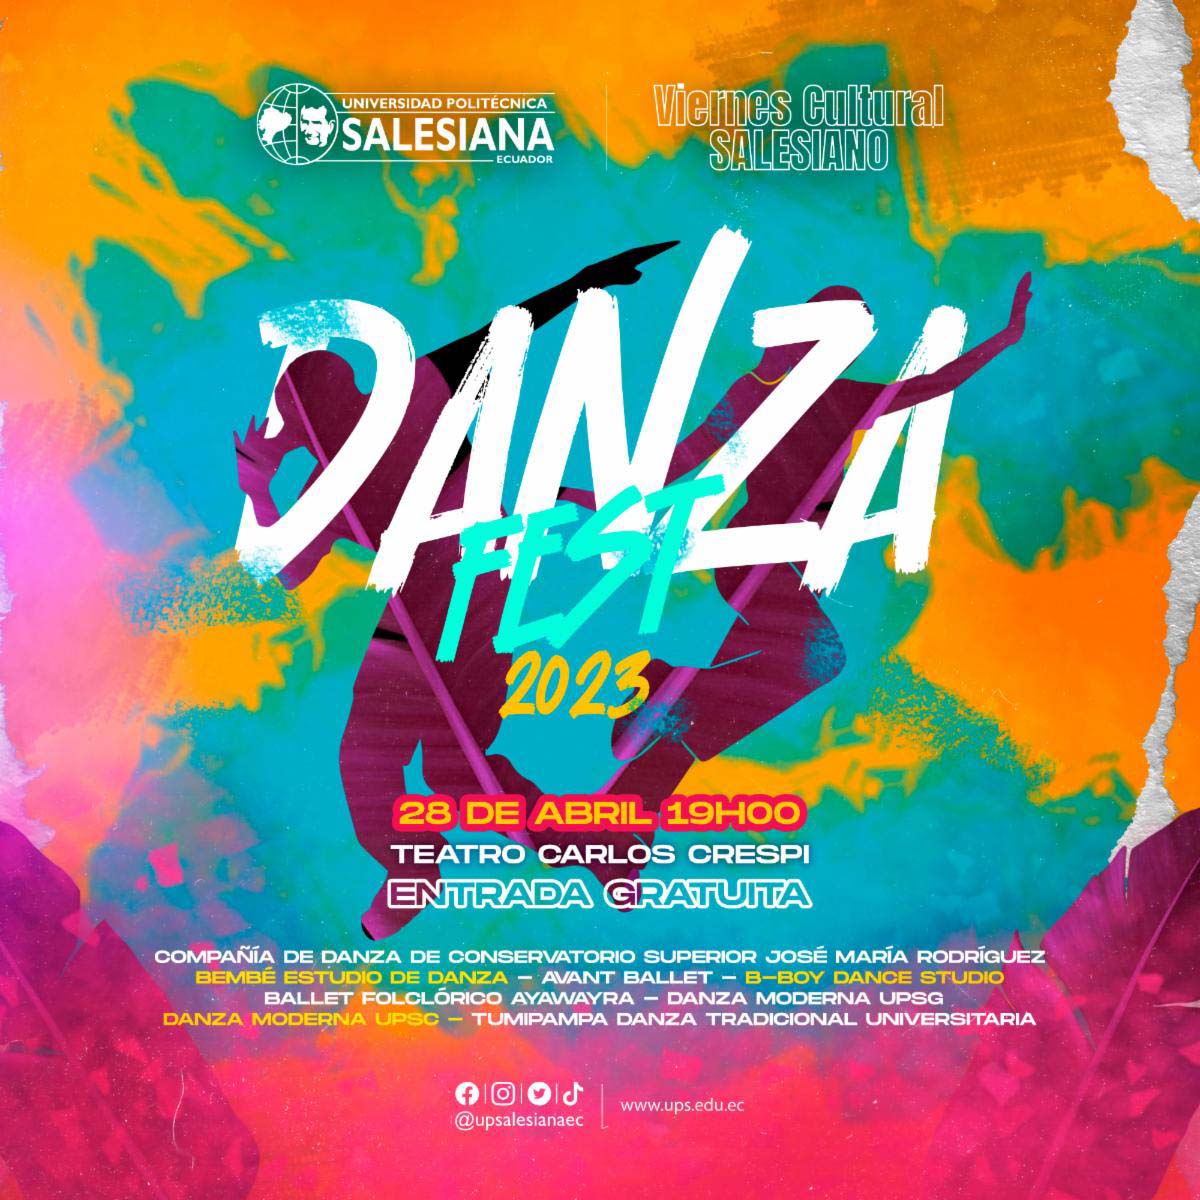 Afiche promocional del Viernes Cultural Salesiano - Danza Fest 2023